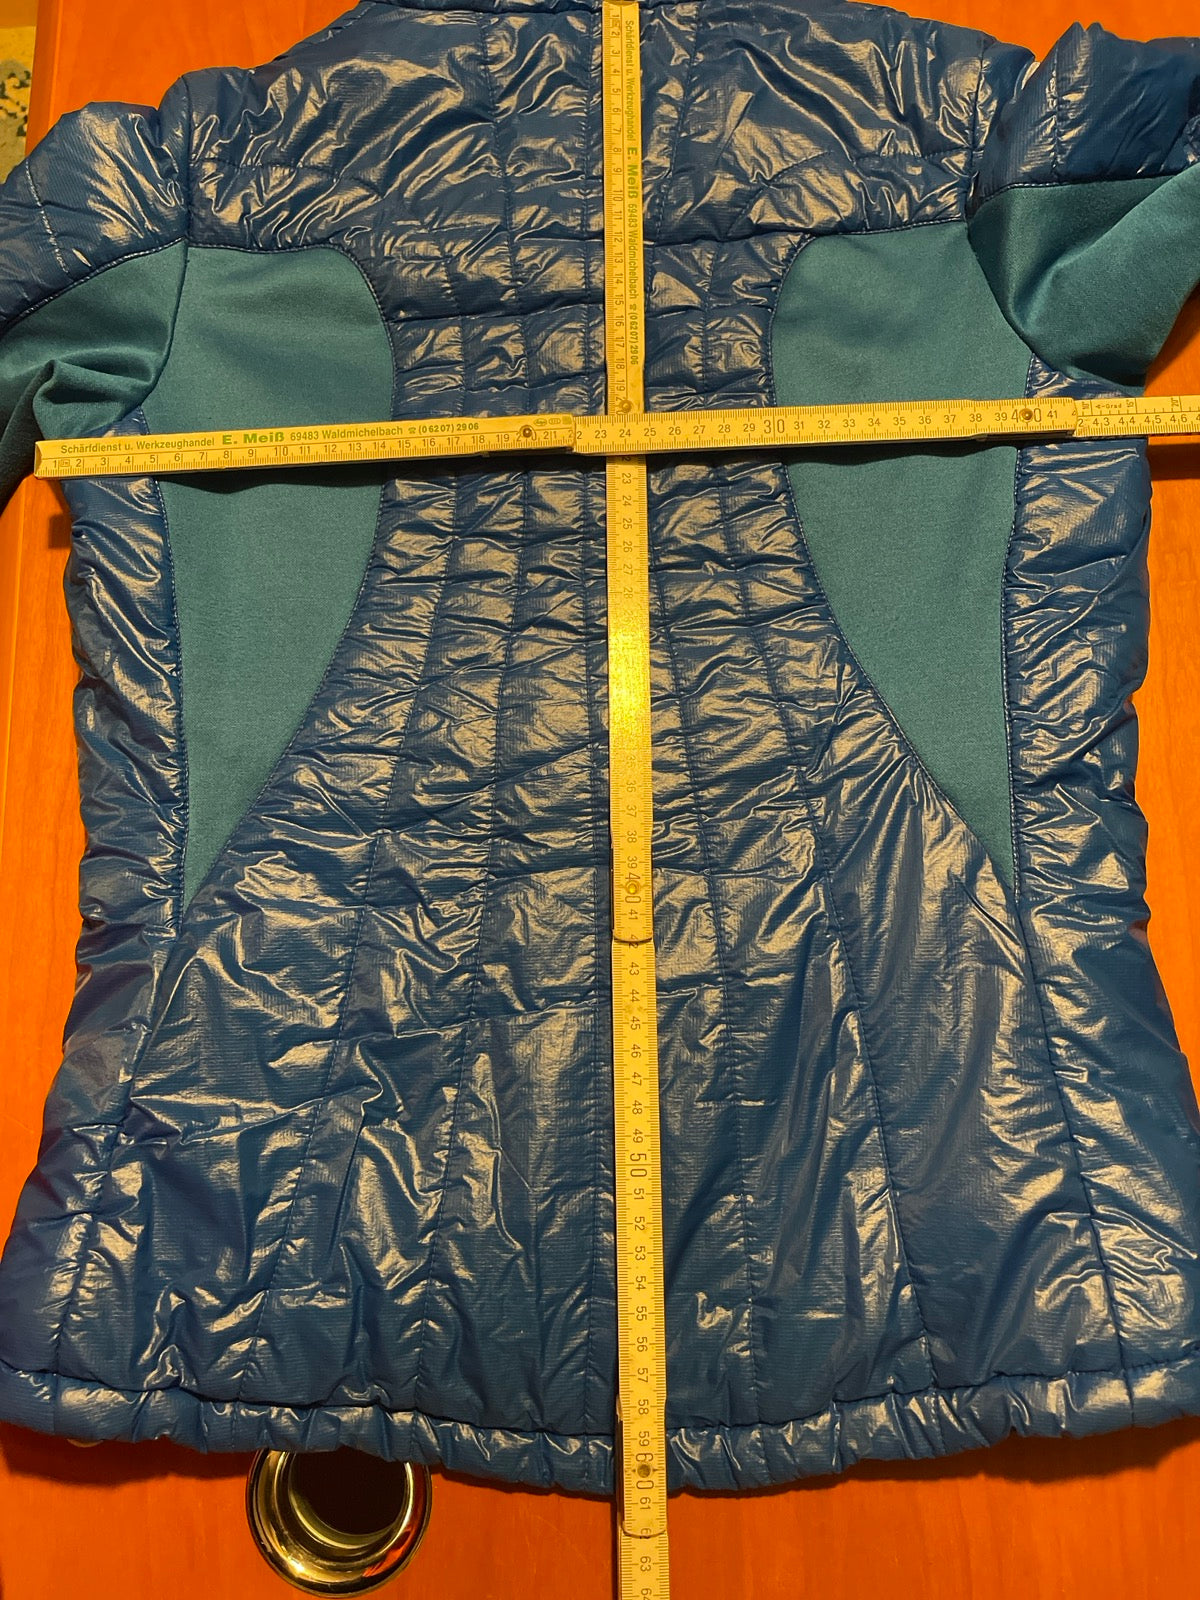 Blaue Jacke von Ortovox in Größe XS (Damen) - wanderlich.com